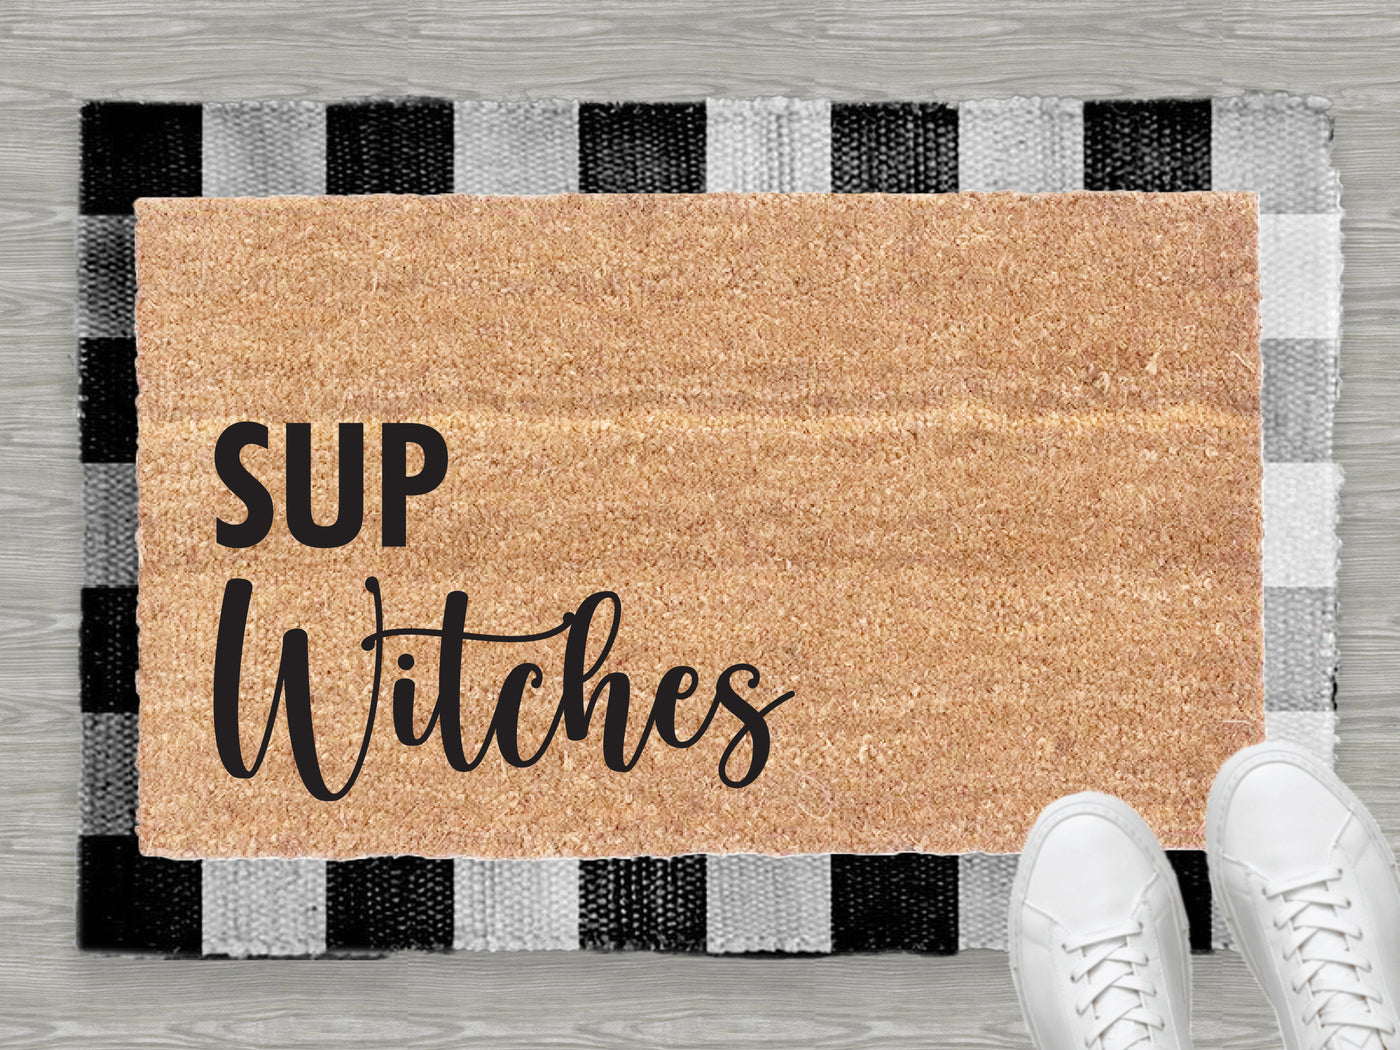 Sup Witches Coir Doormat